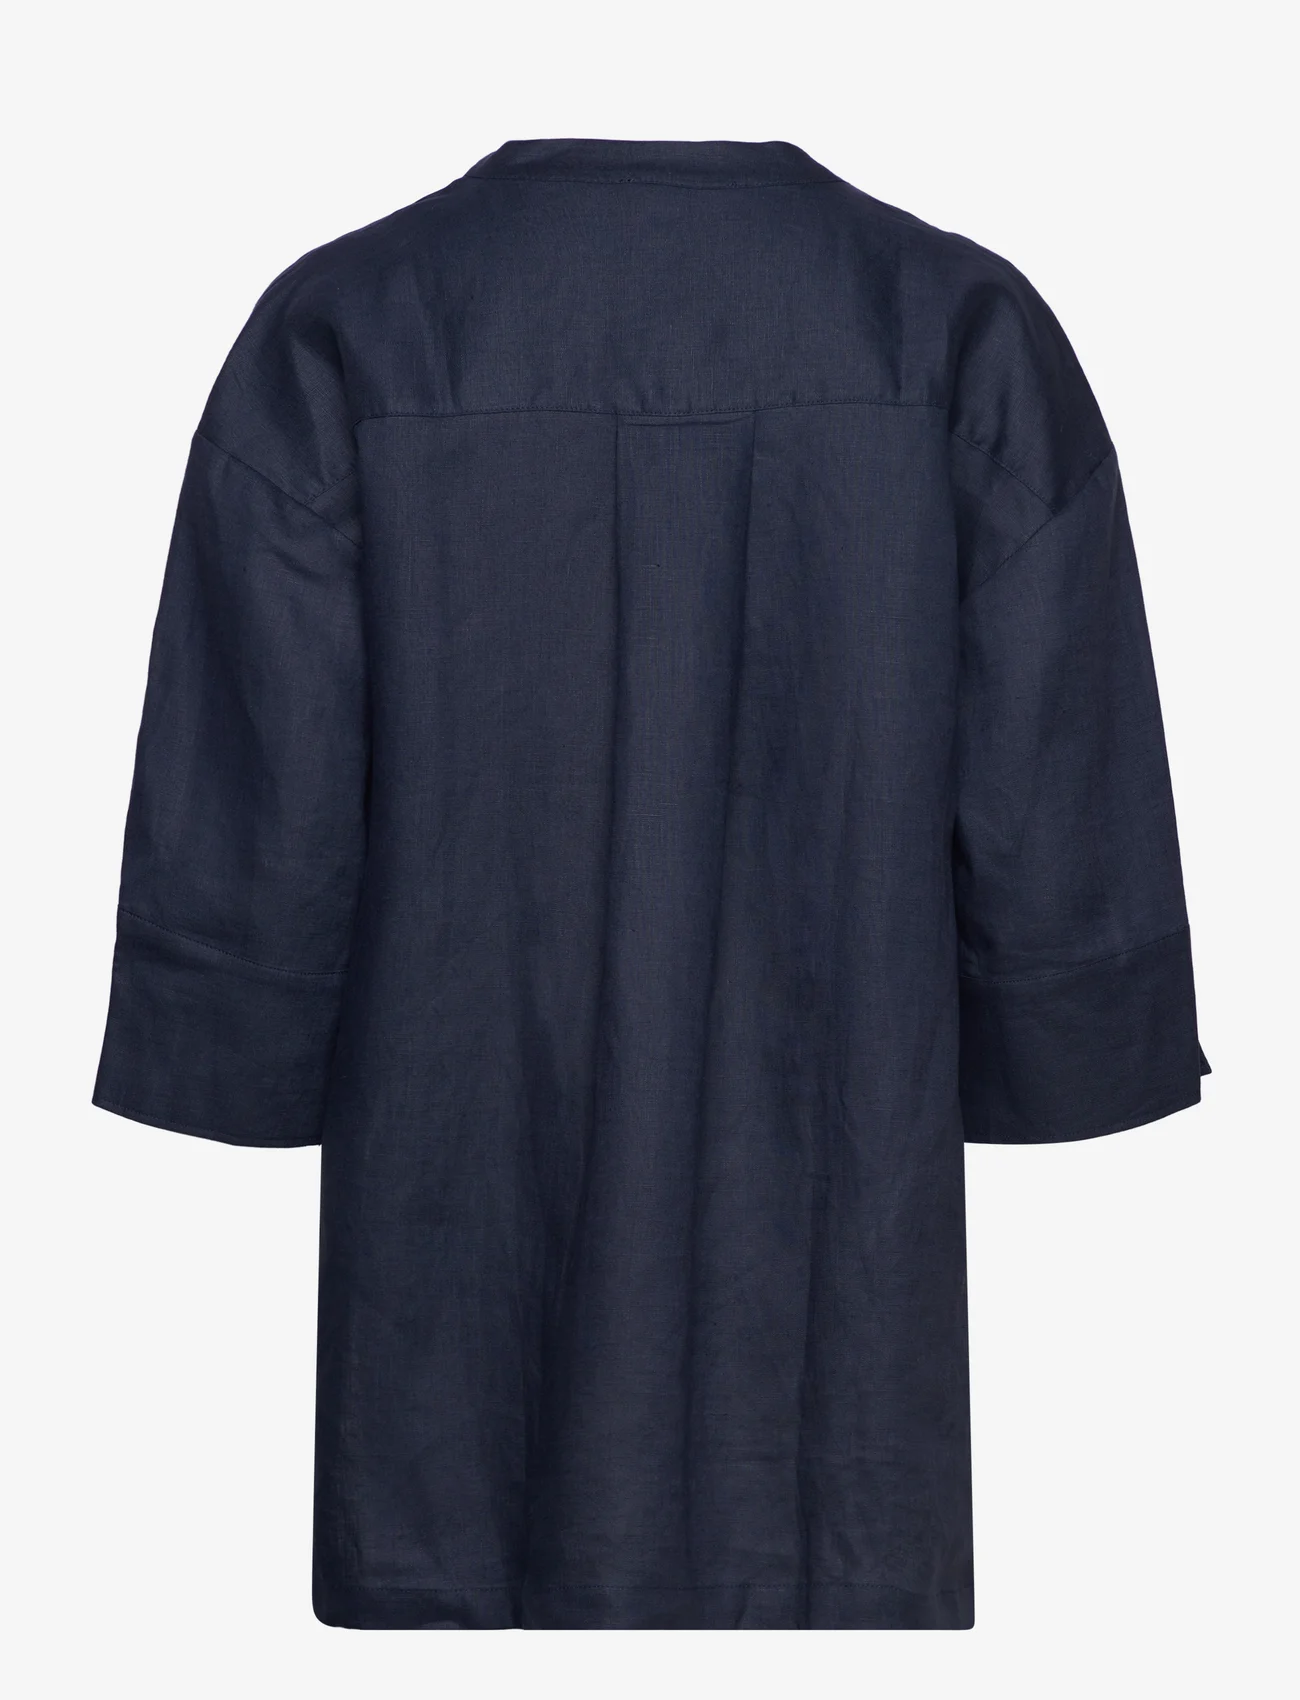 Rosemunde - Linen blouse - linnen overhemden - navy - 1